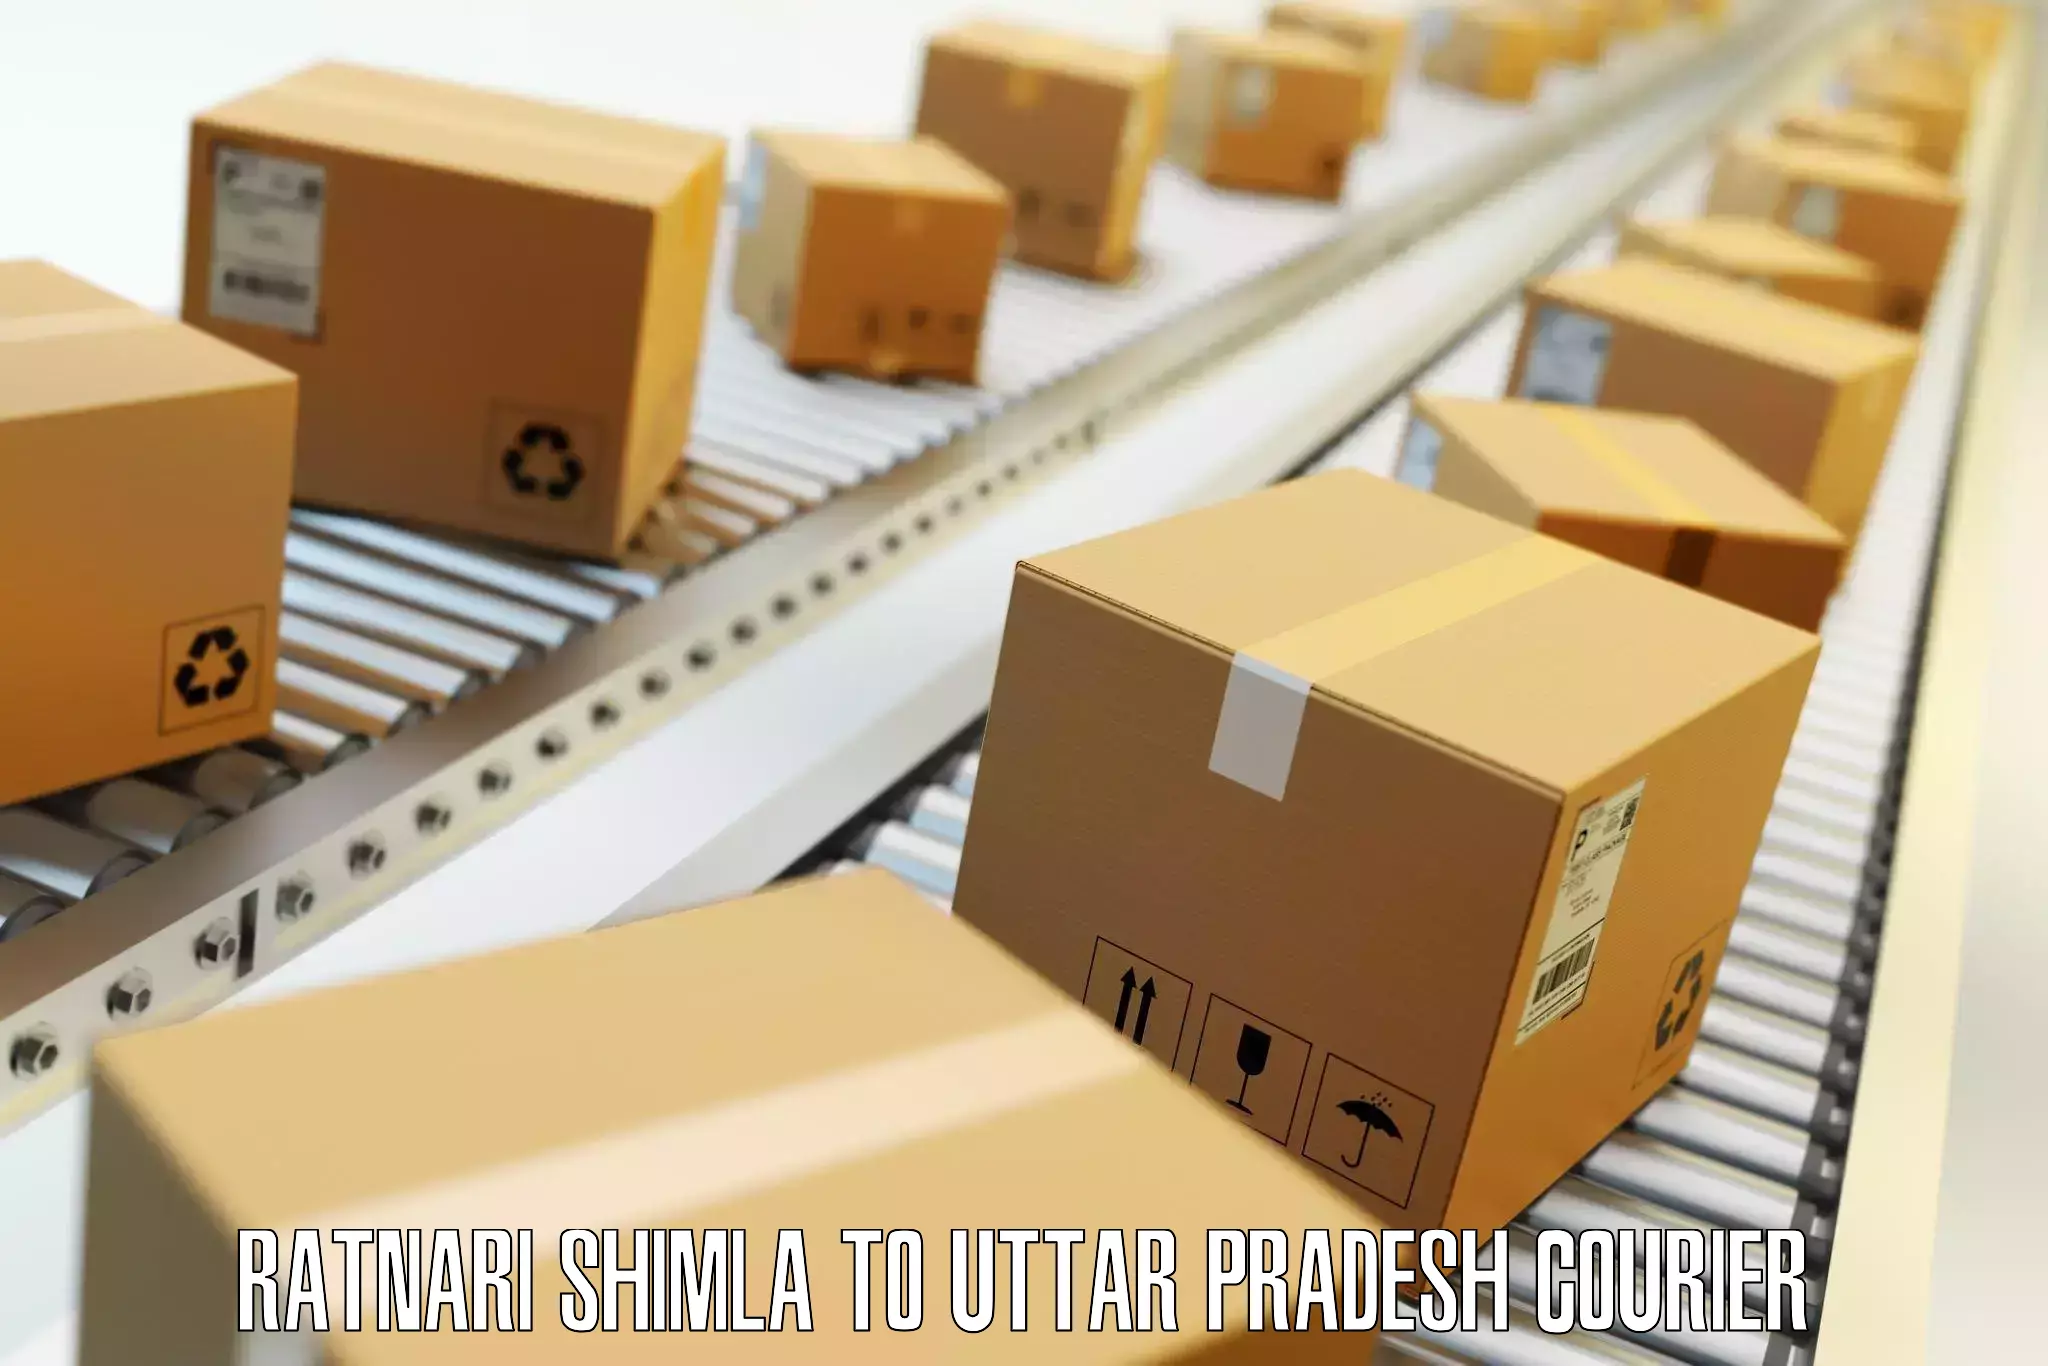 Luggage shipment tracking Ratnari Shimla to Varanasi